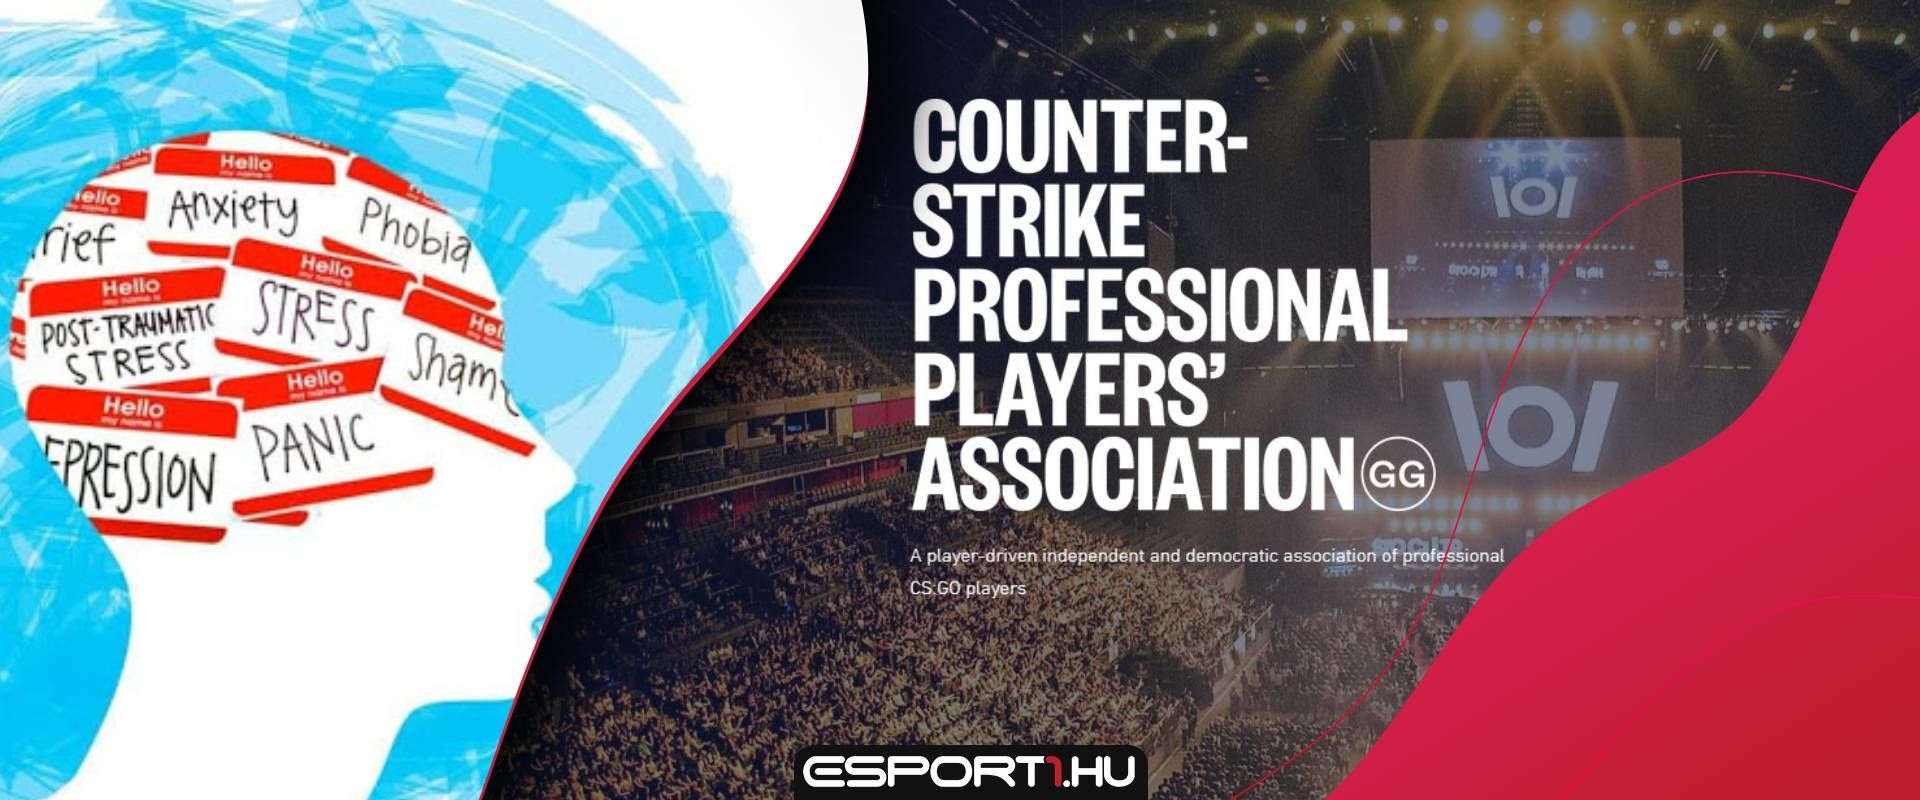 Fejleszti a mentális egészséget megőrző programját a CSPPA, vagyis a Counter-Strike Játékosok Profi Szövetsége